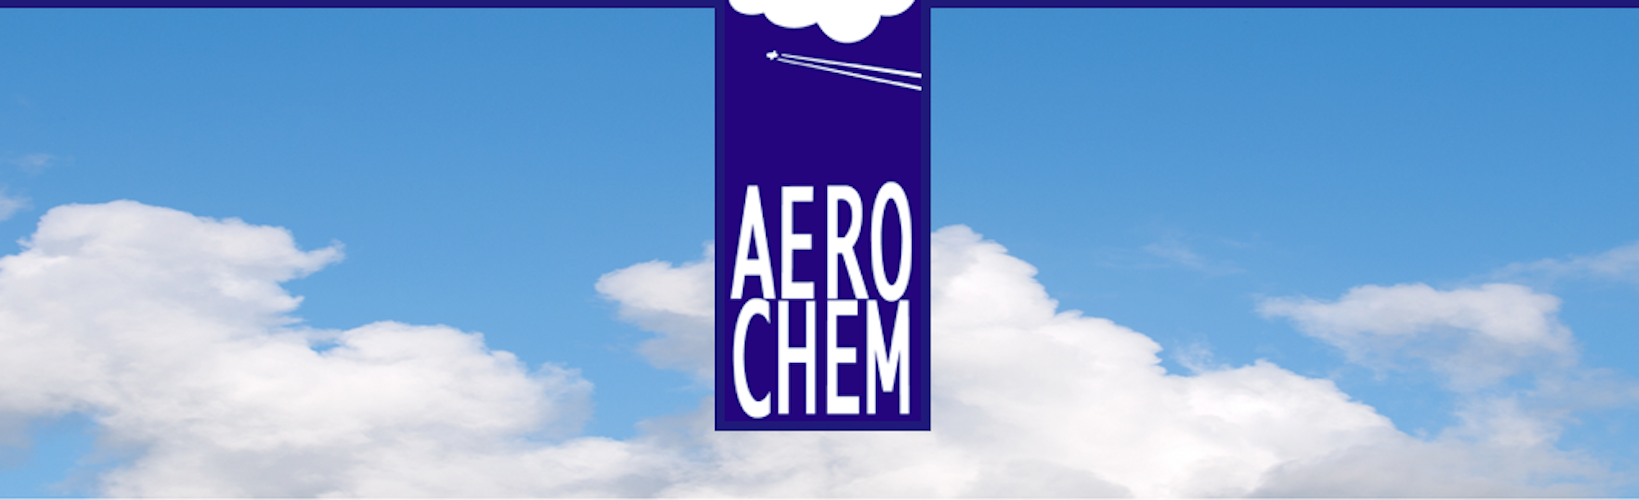 Scie chimiche: La AeroChem